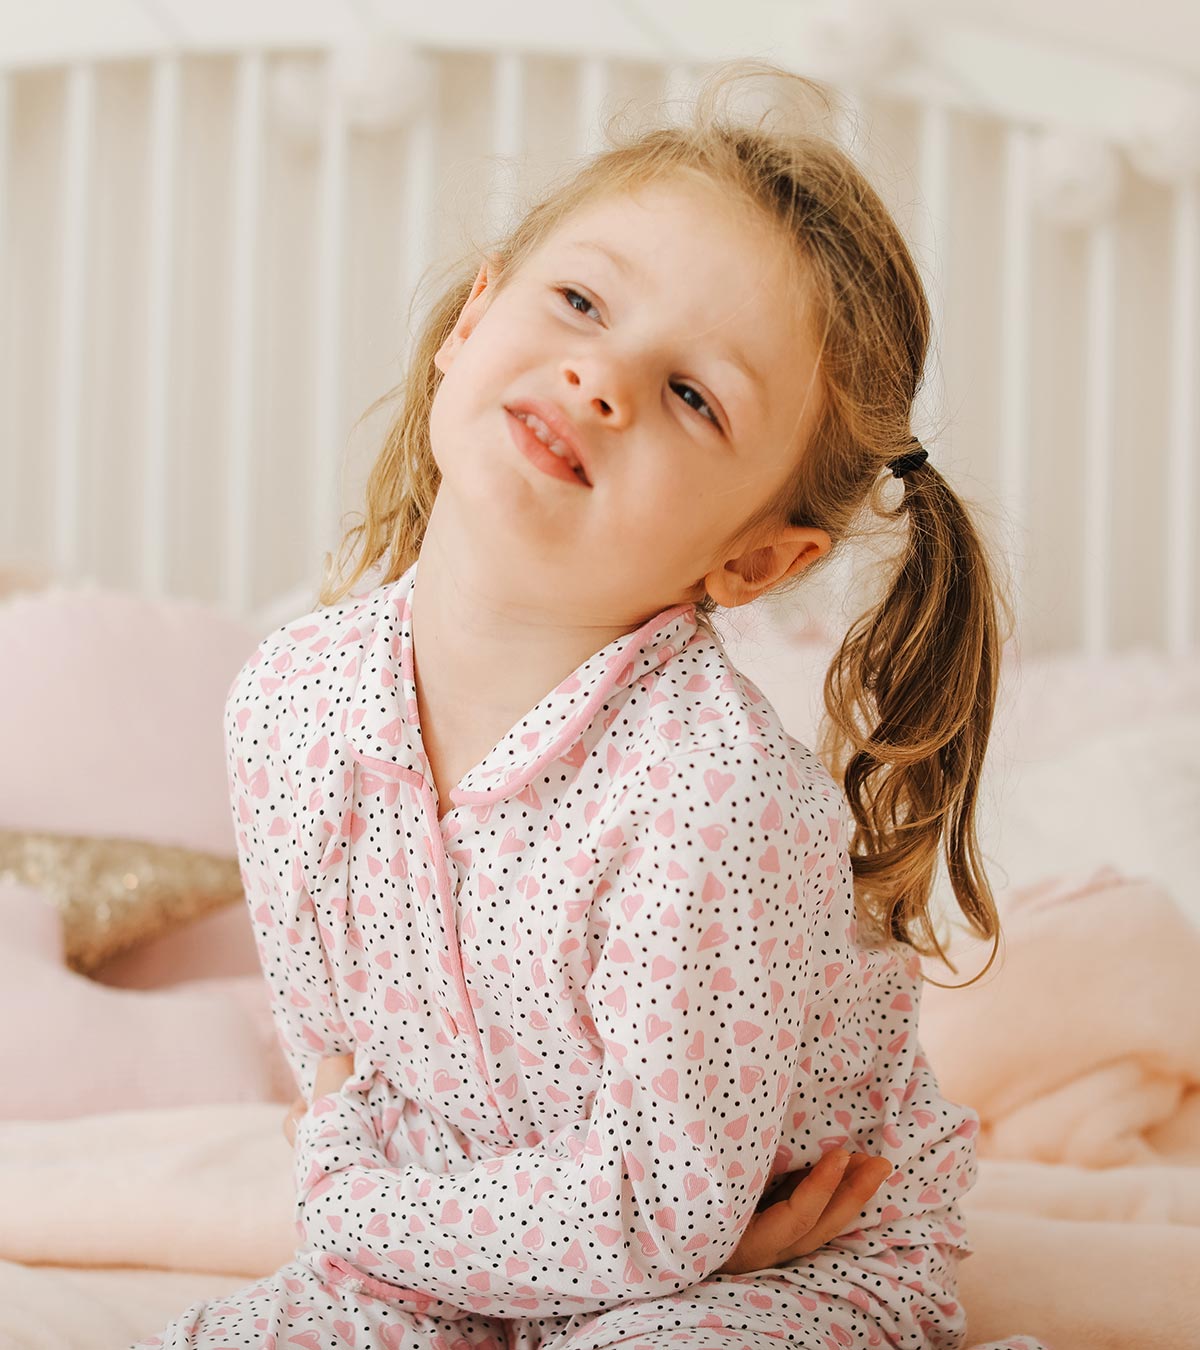 儿童阴道炎:原因、症状和治疗方法